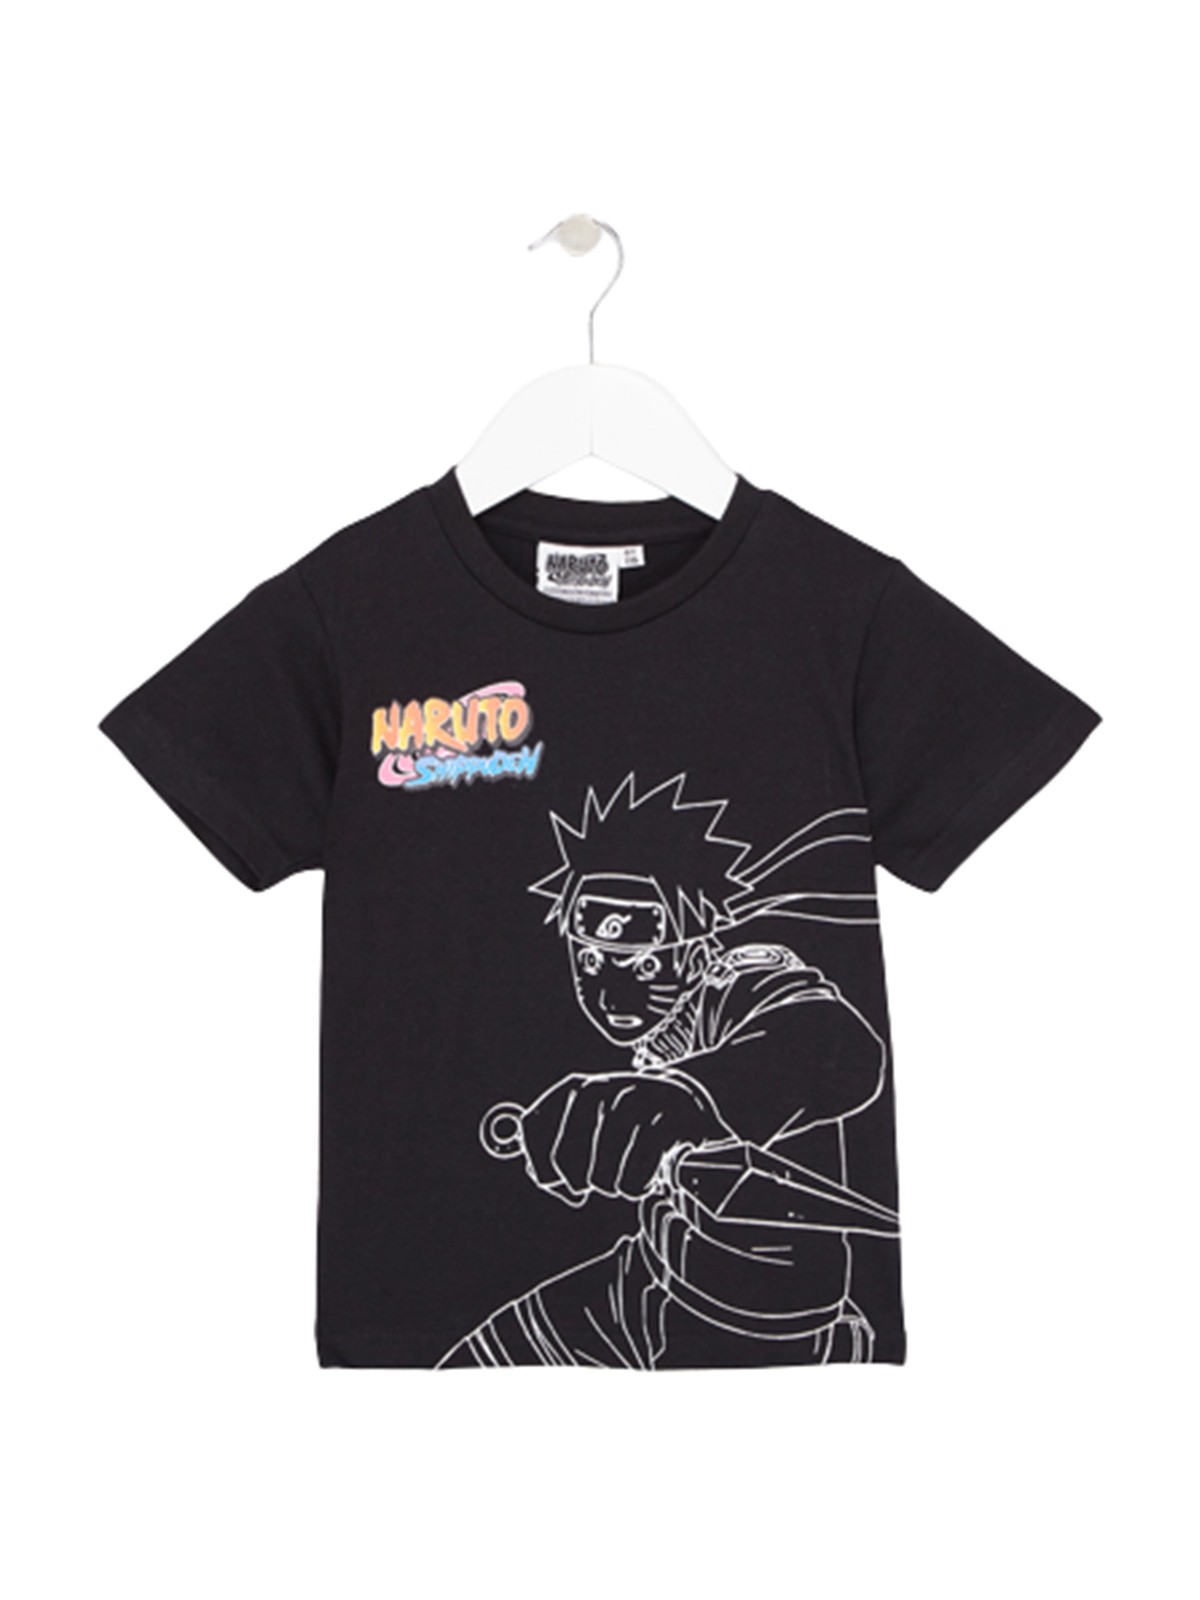 Naruto T-shirt short sleeves